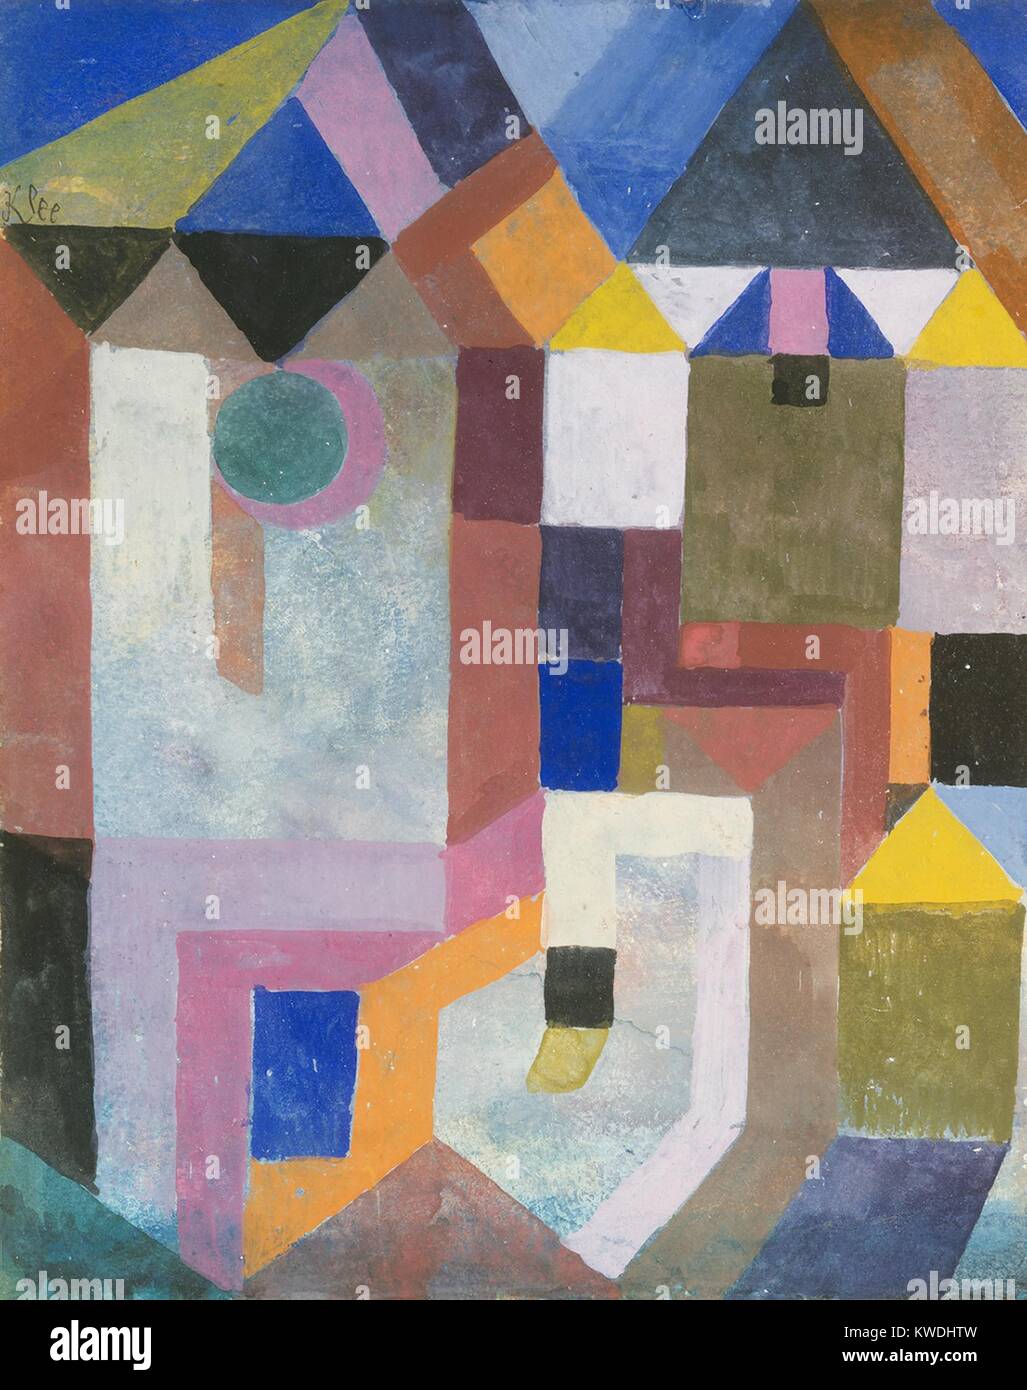 Farbenfrohe Architektur, von Paul Klee, 1917, Schweizer Zeichnung, Gouache auf Papier. Ebenen der hellen Farbe zeigen dekorativ abstrahierten Architektur (BSLOC 2017 7 38) Stockfoto